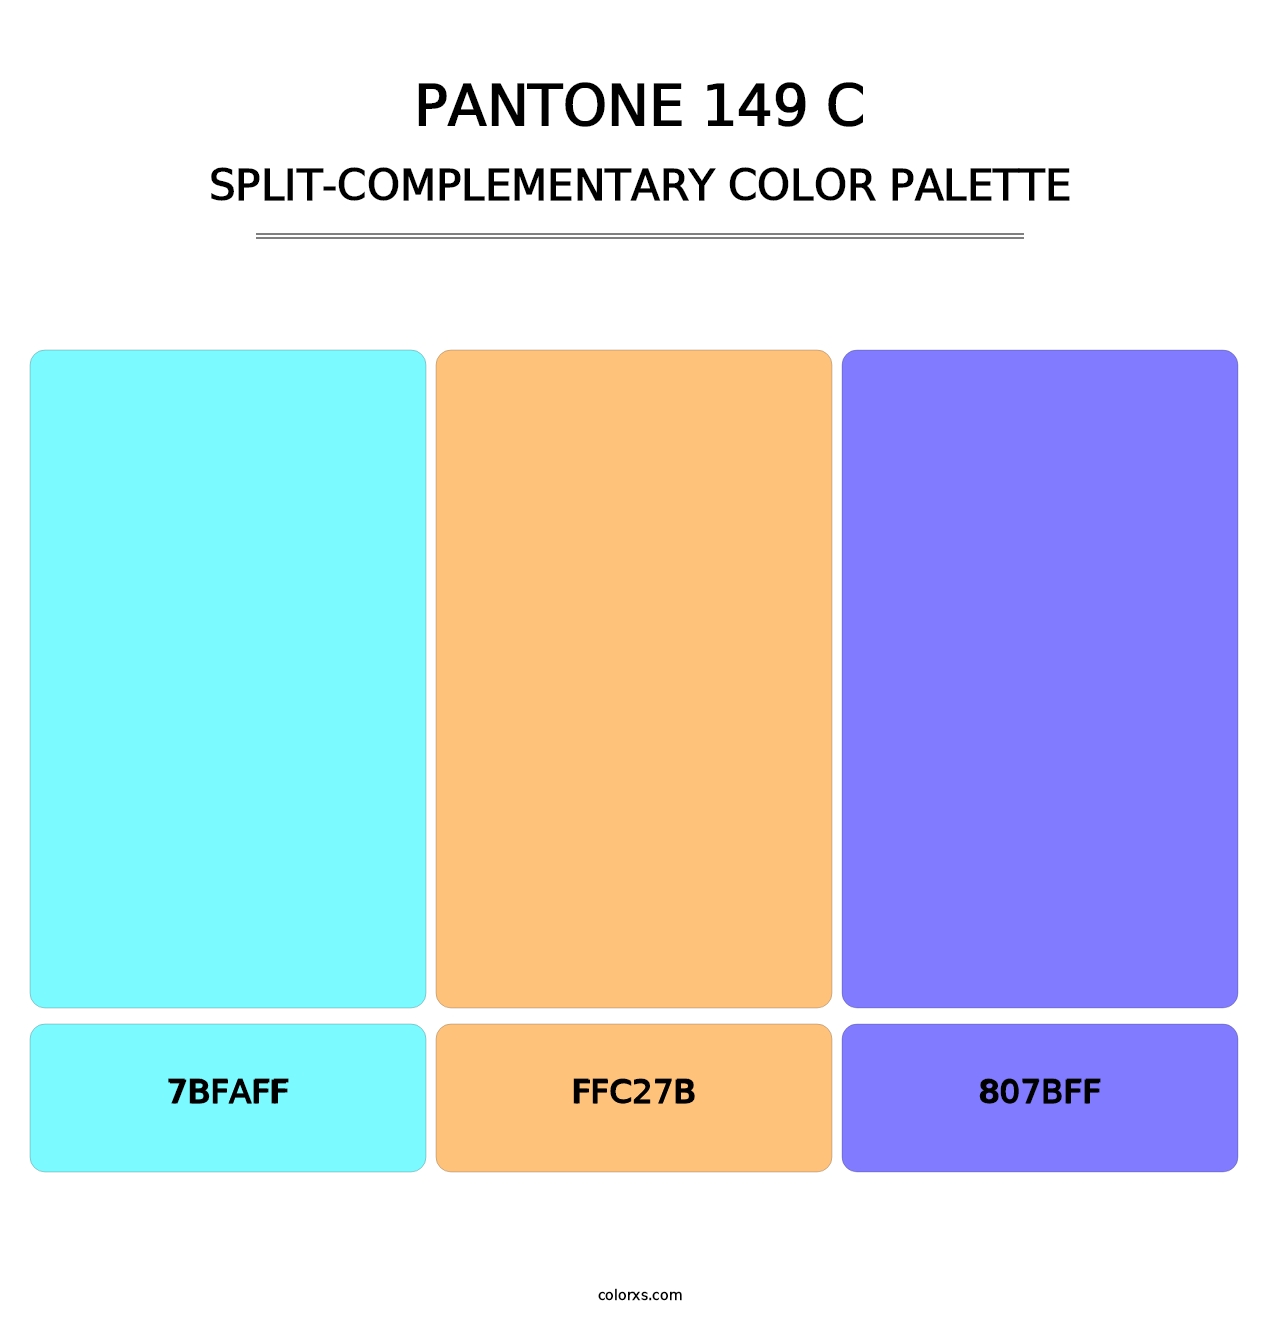 PANTONE 149 C - Split-Complementary Color Palette